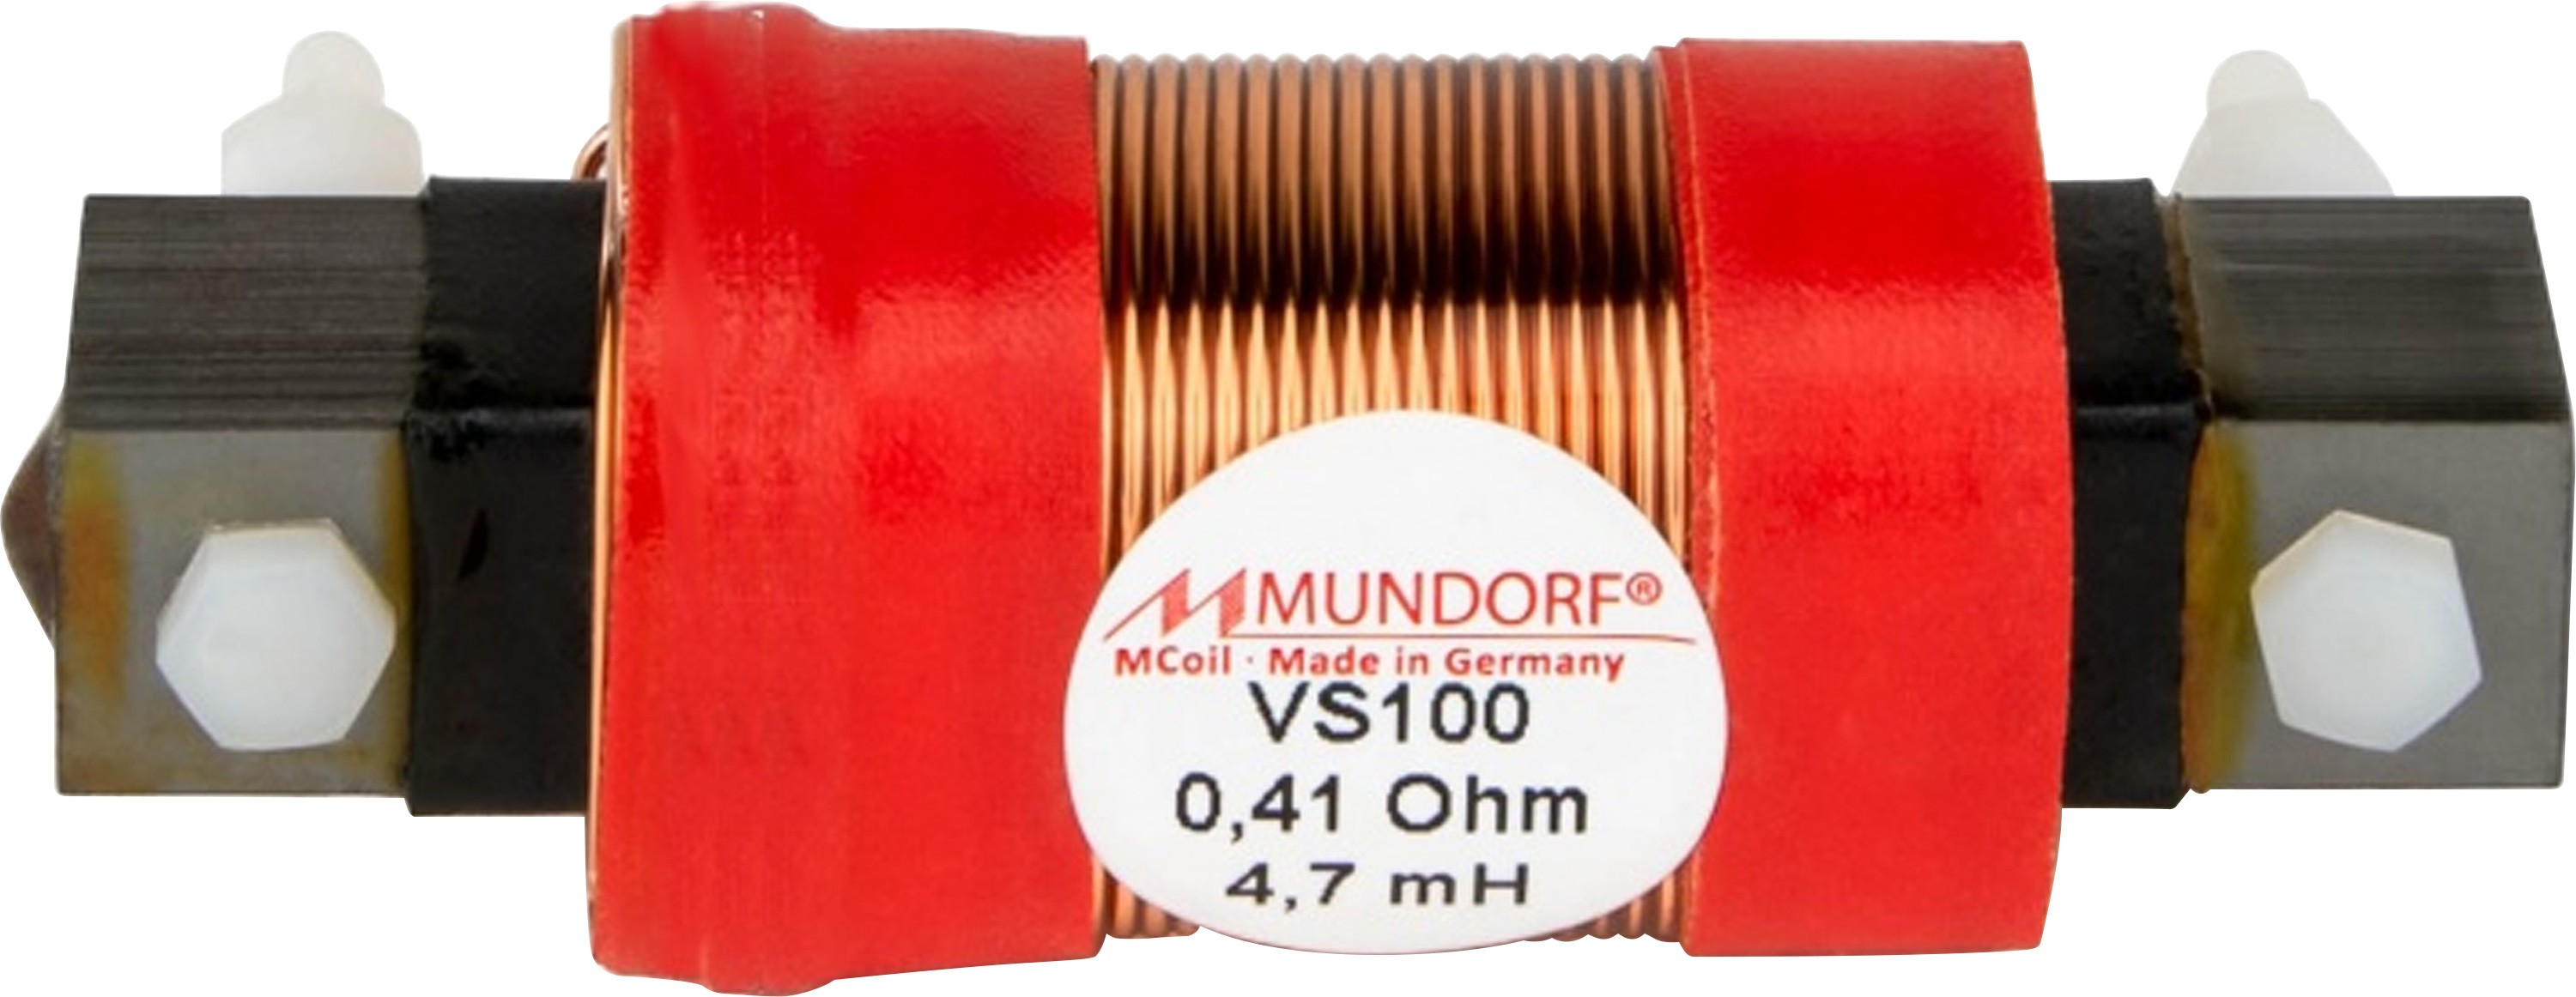 MUNDORF VS100-5.6 MCOIL ICORE Copper Coil Feron Core 5.6mH